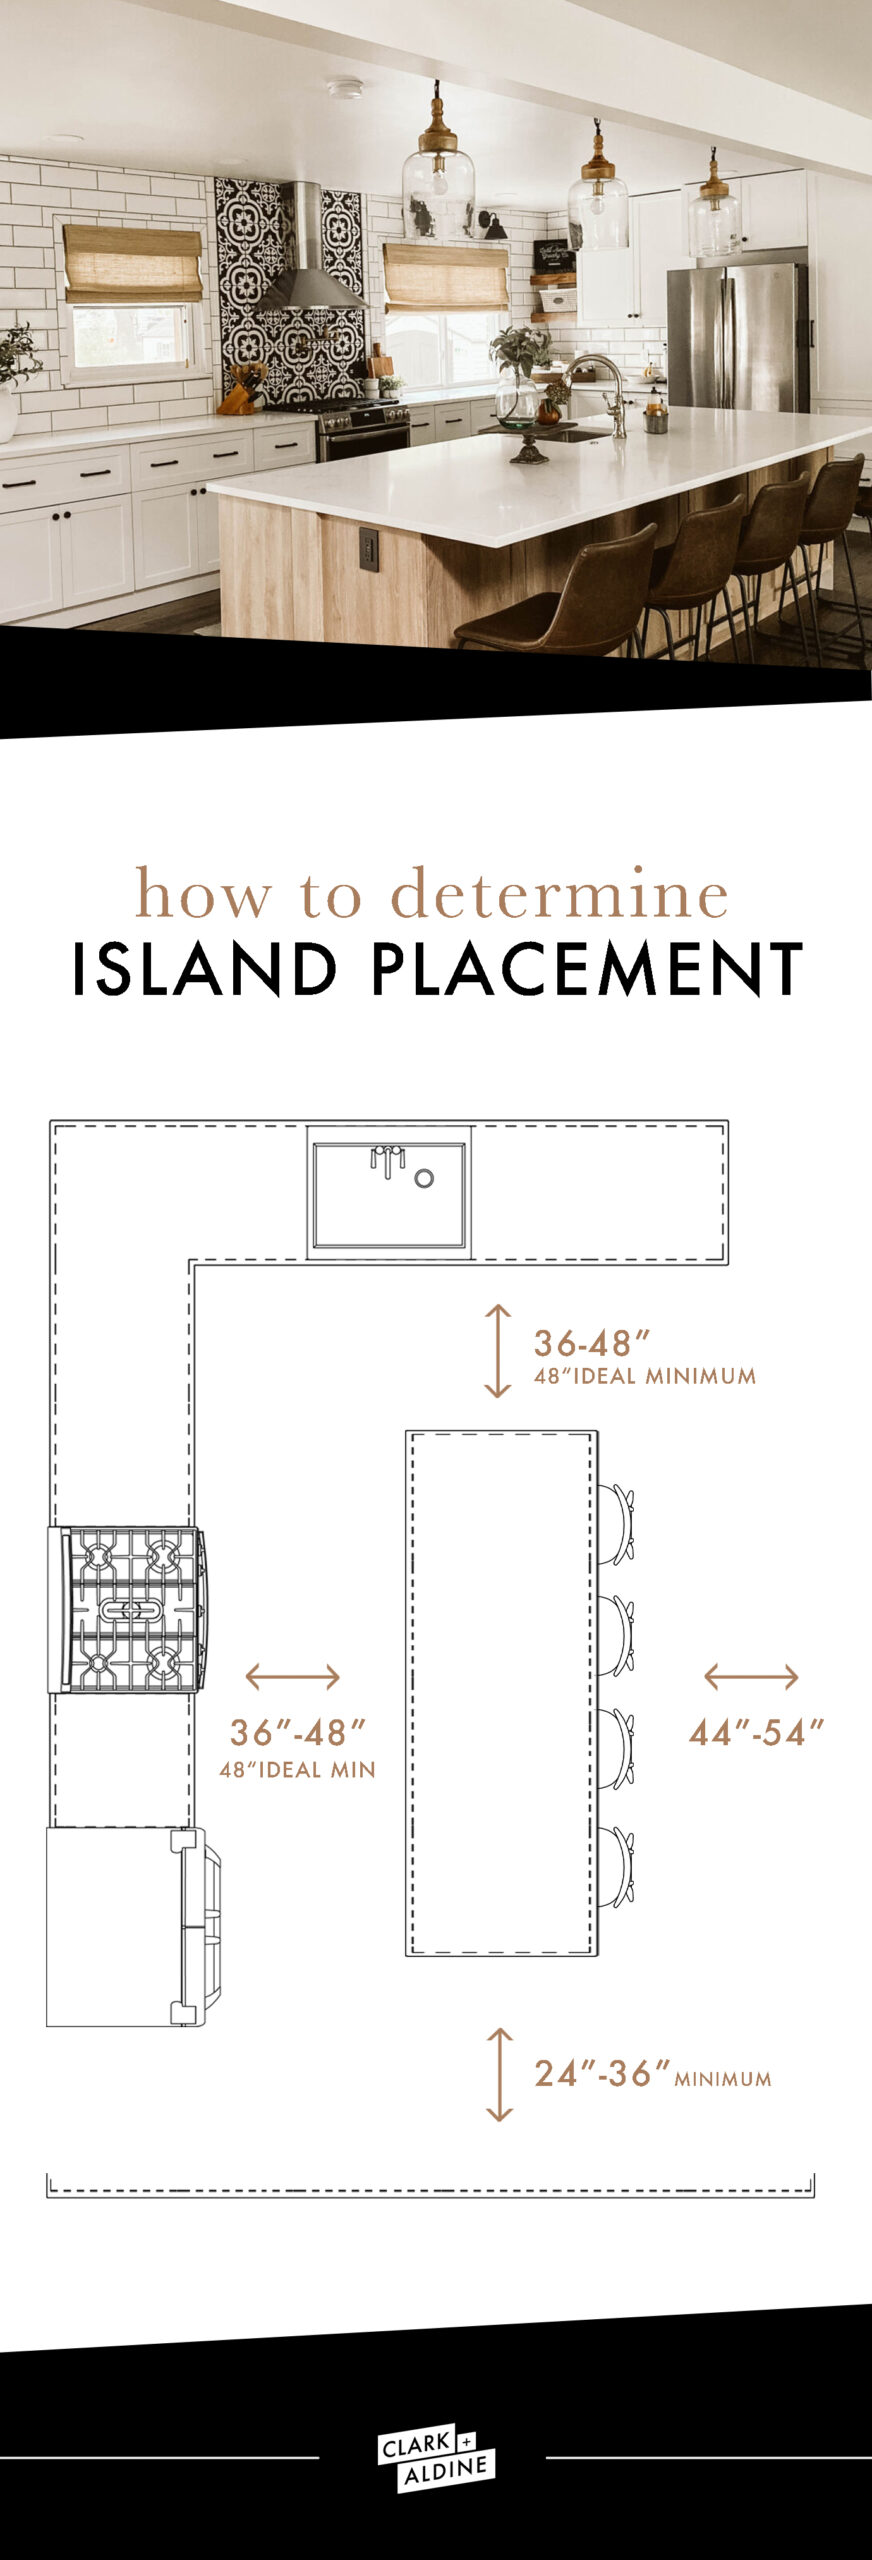 HOW TO DETERMINE KITCHEN ISLAND PLACEMENT   Clark + Aldine